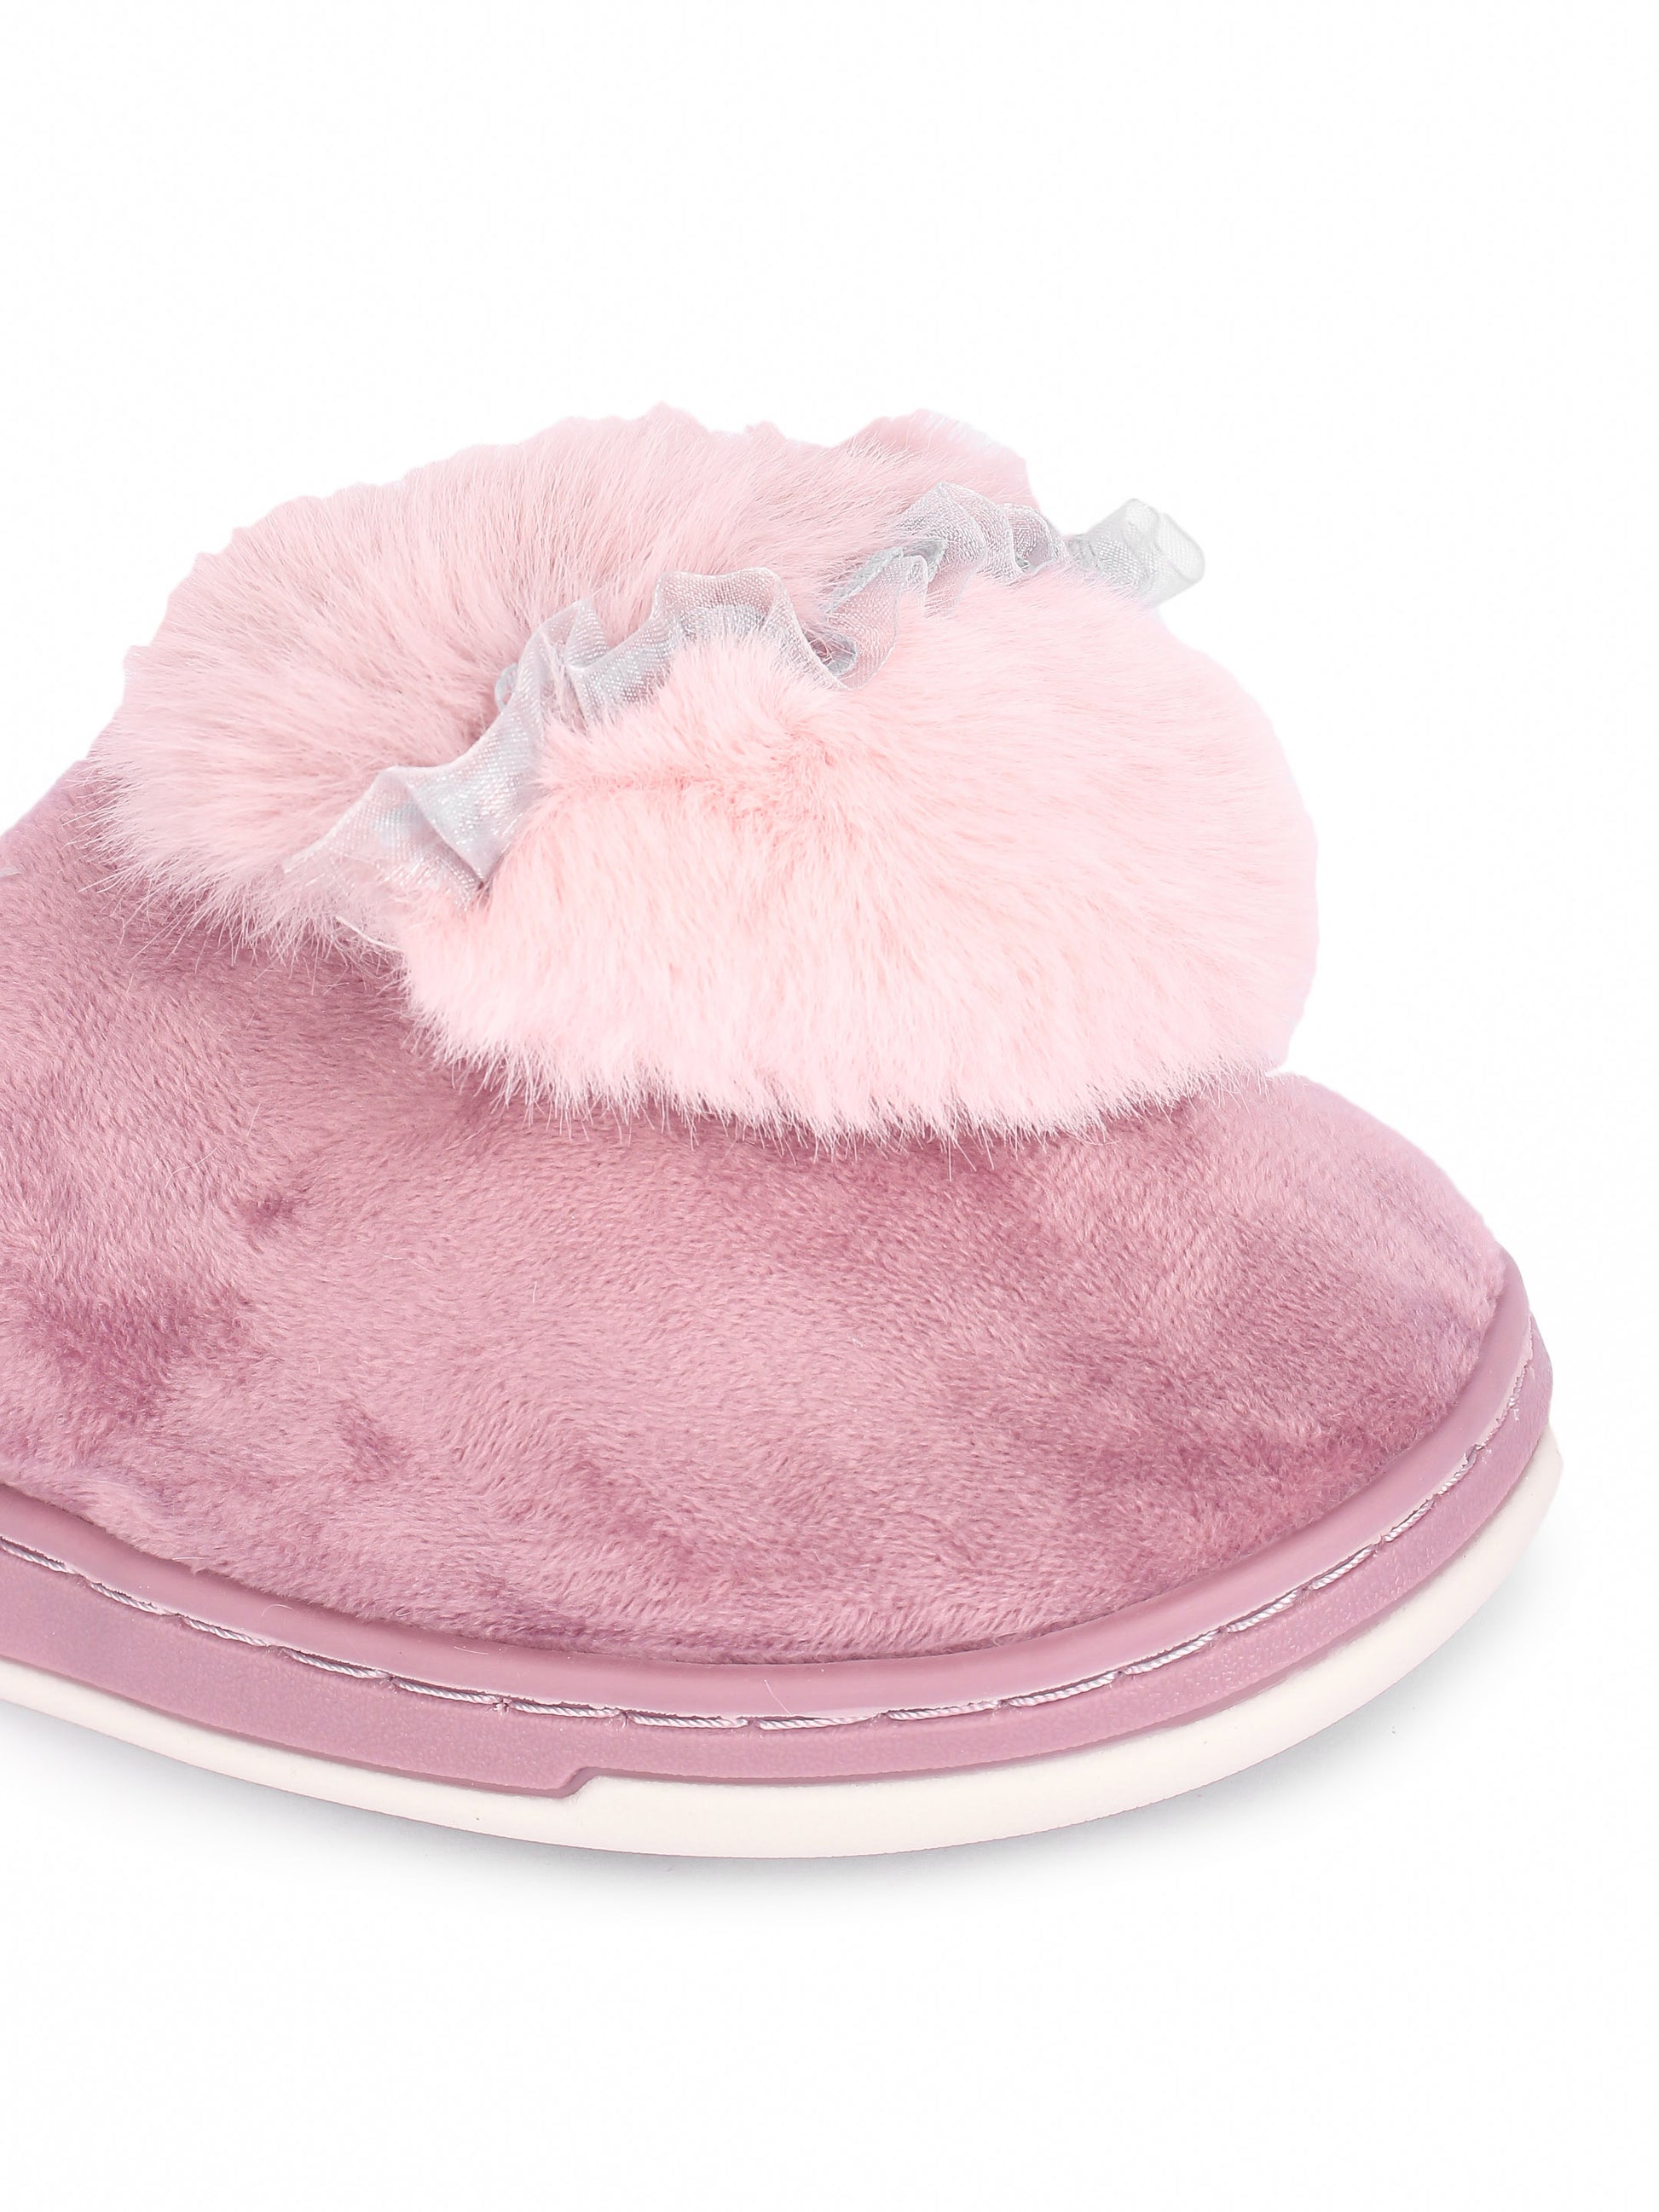 Brauch Women's Pink Fur Heart Apple Winter Slippers